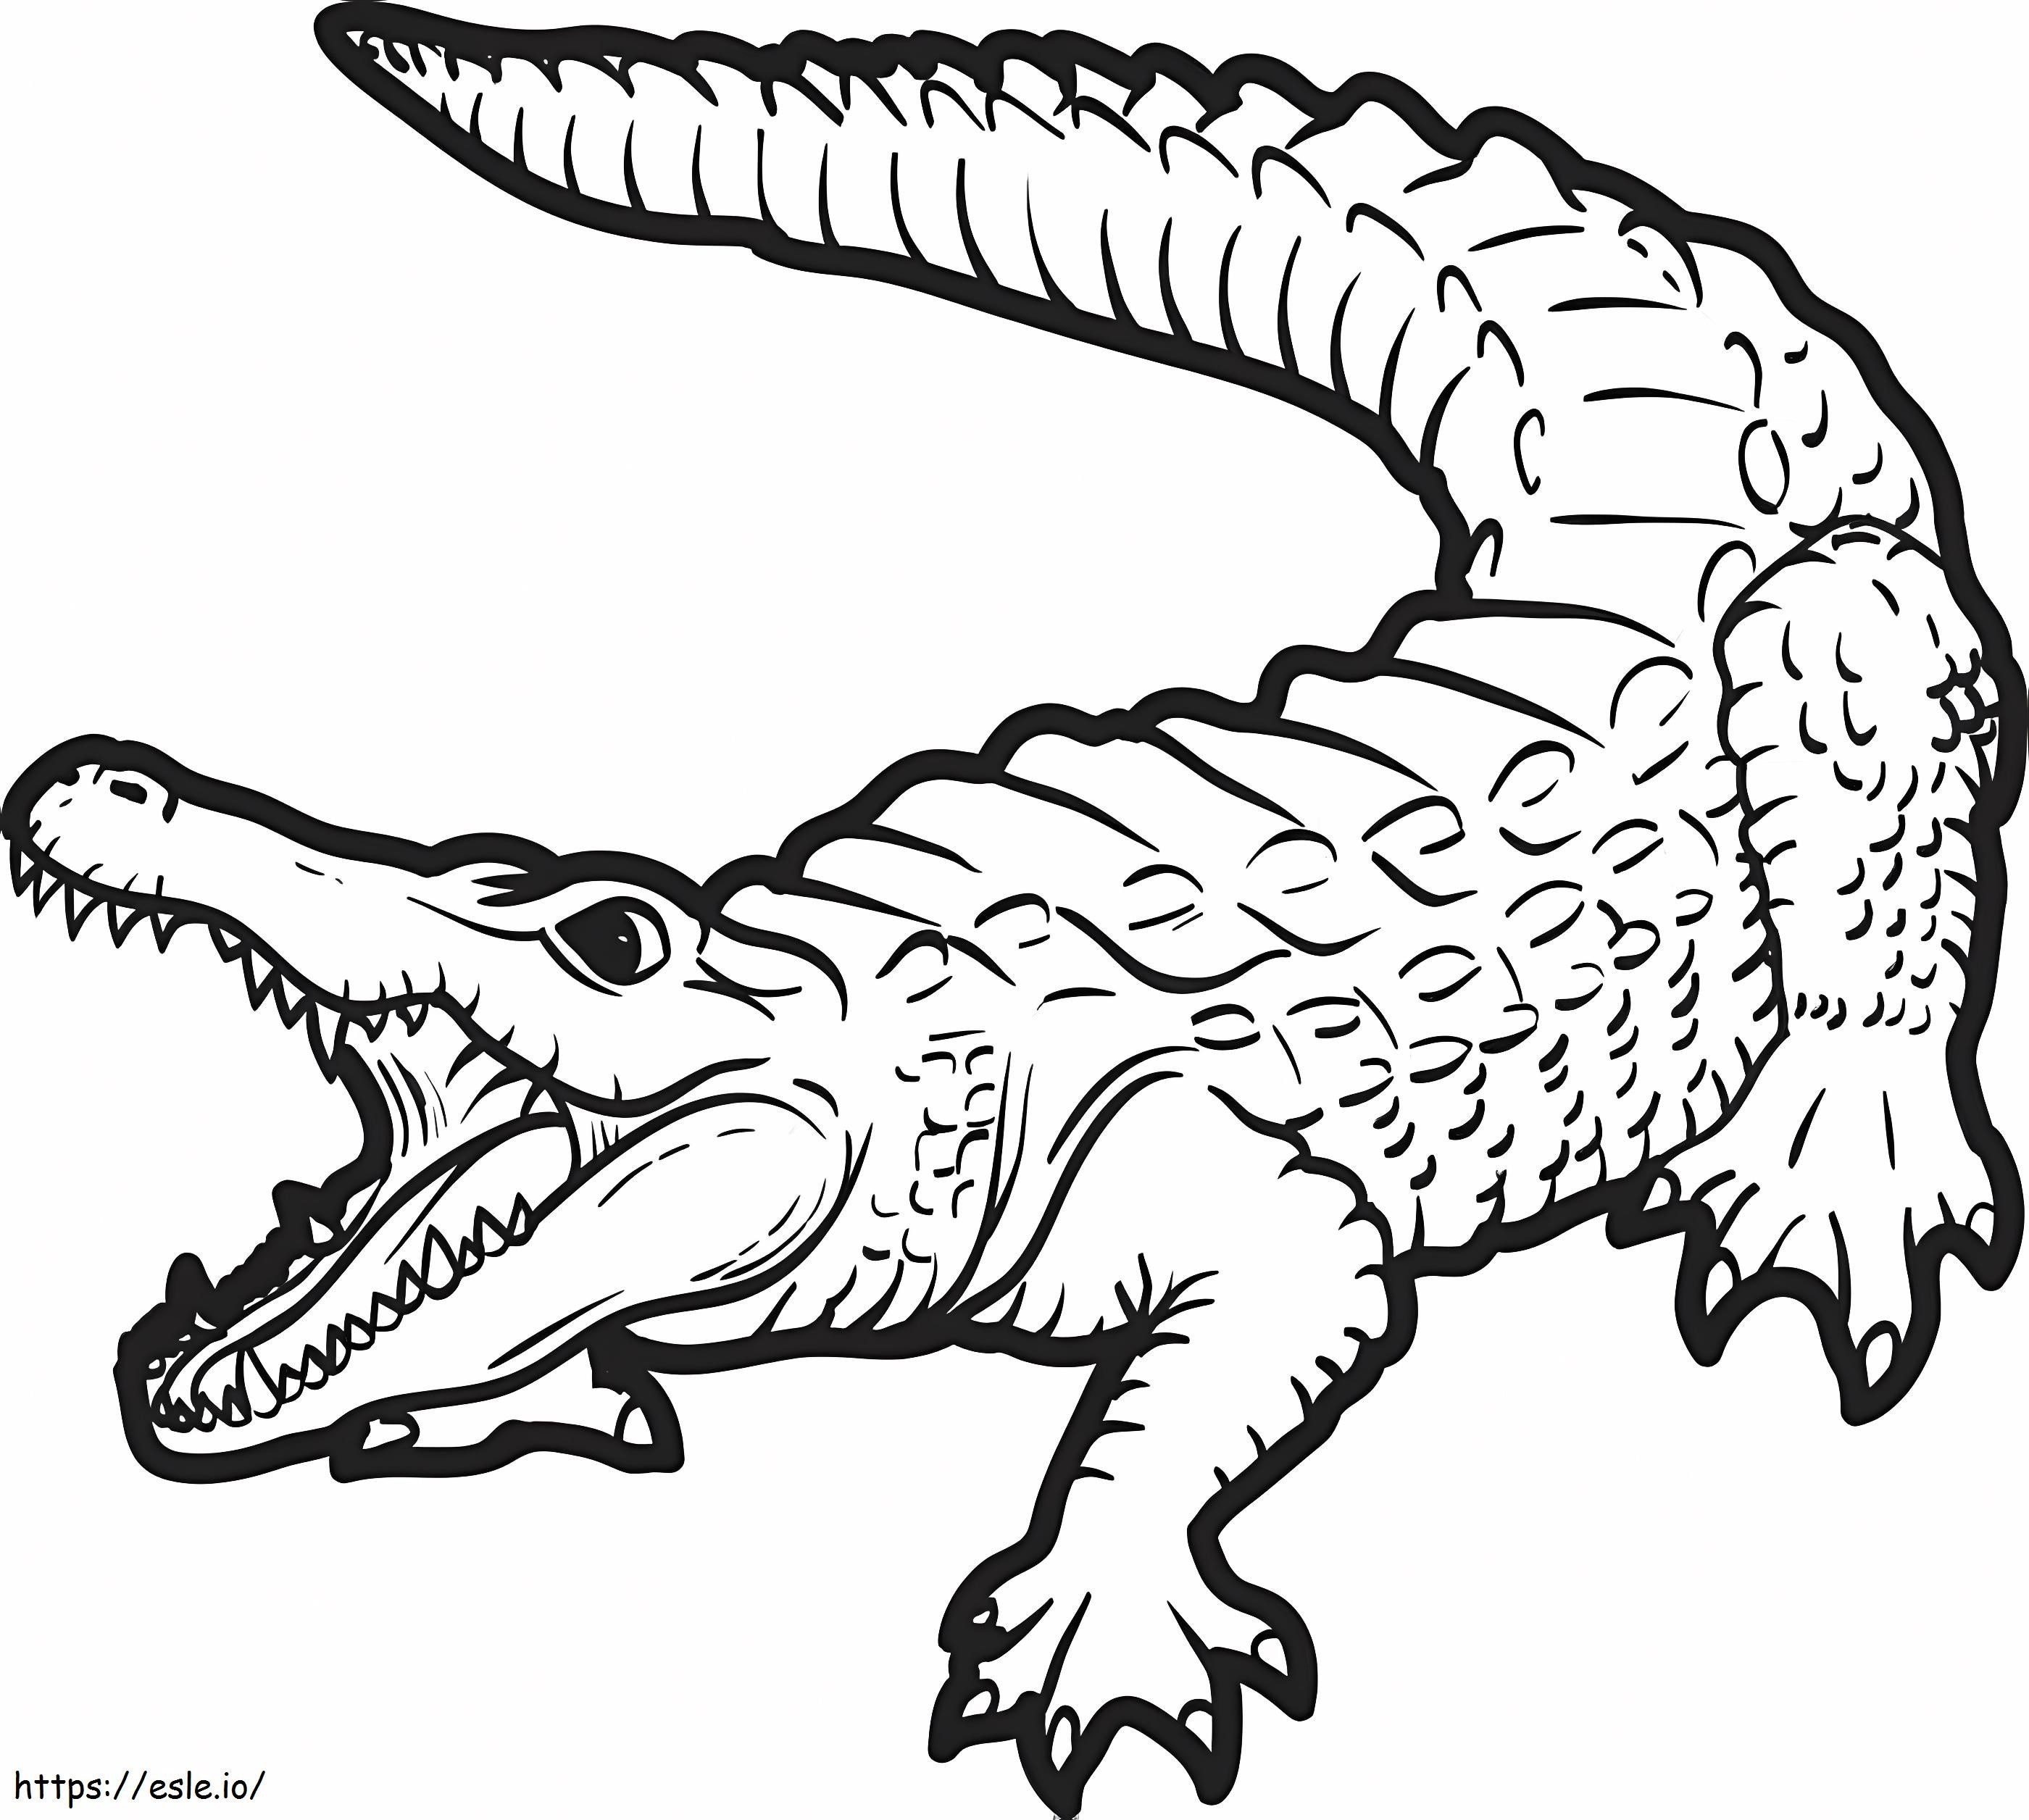 Alligatore 1 da colorare